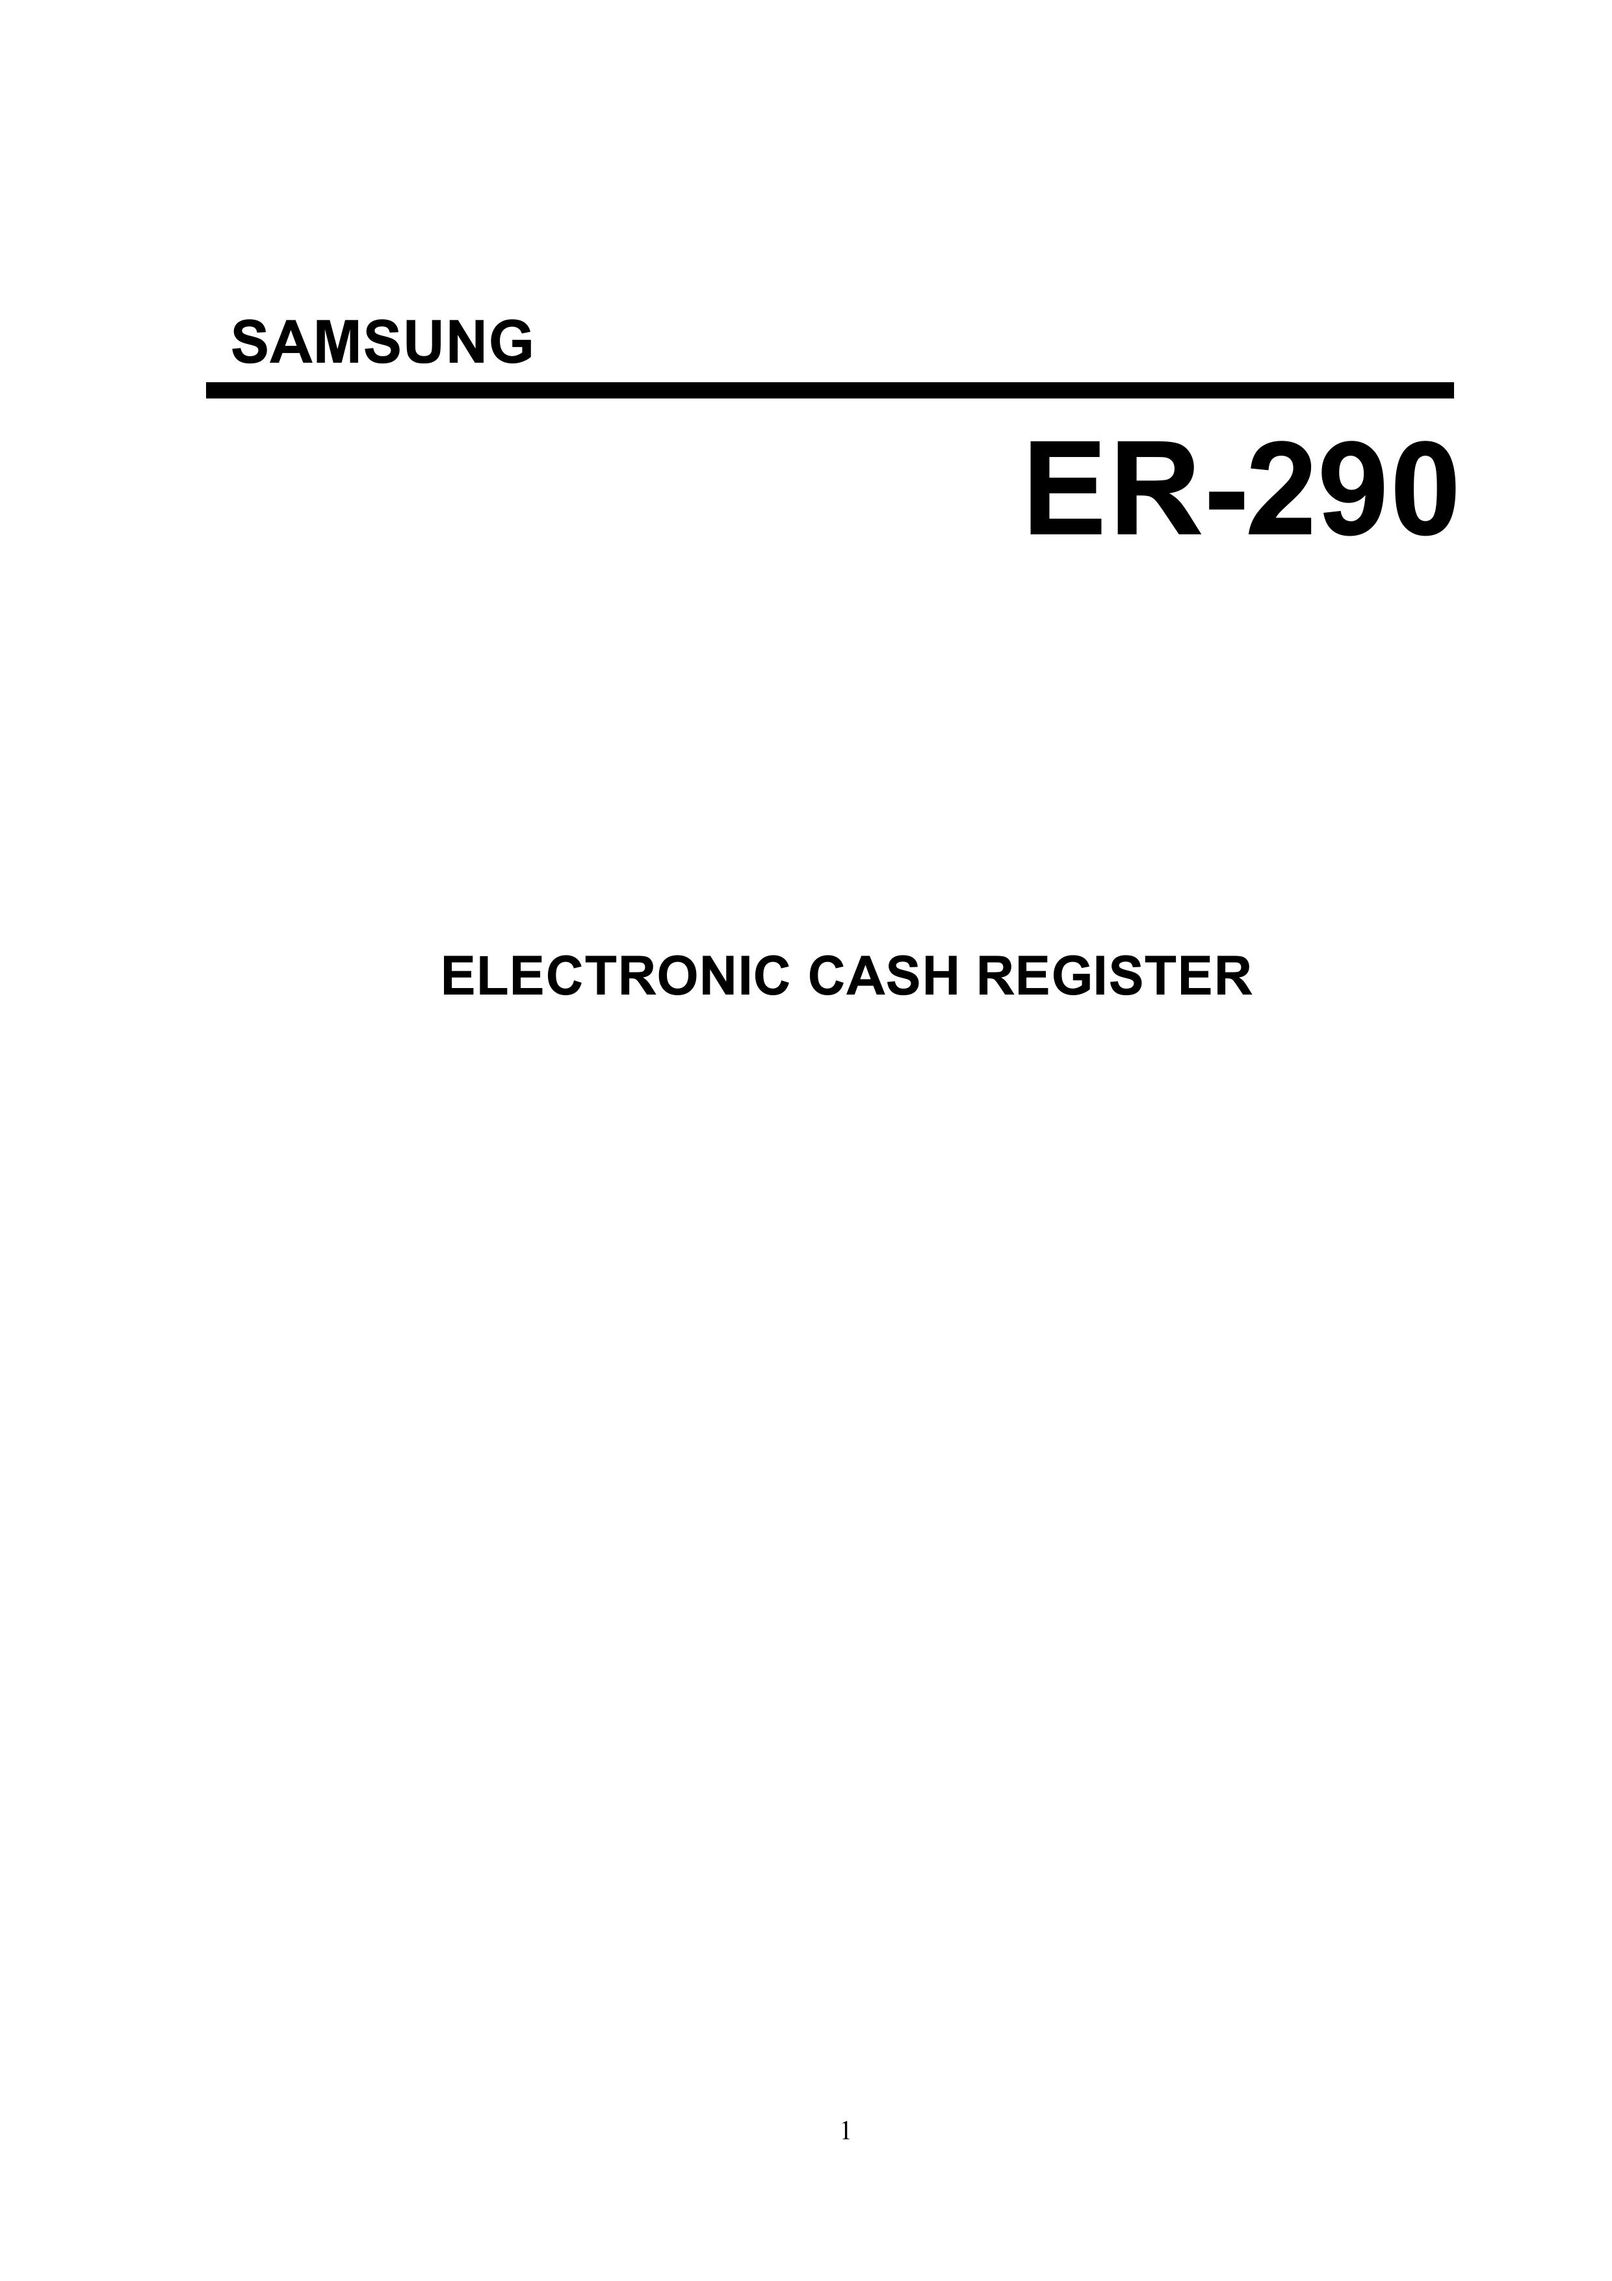 Samsung SAMSUNG ELECTRONIC CASH REGISTER Cash Register User Manual